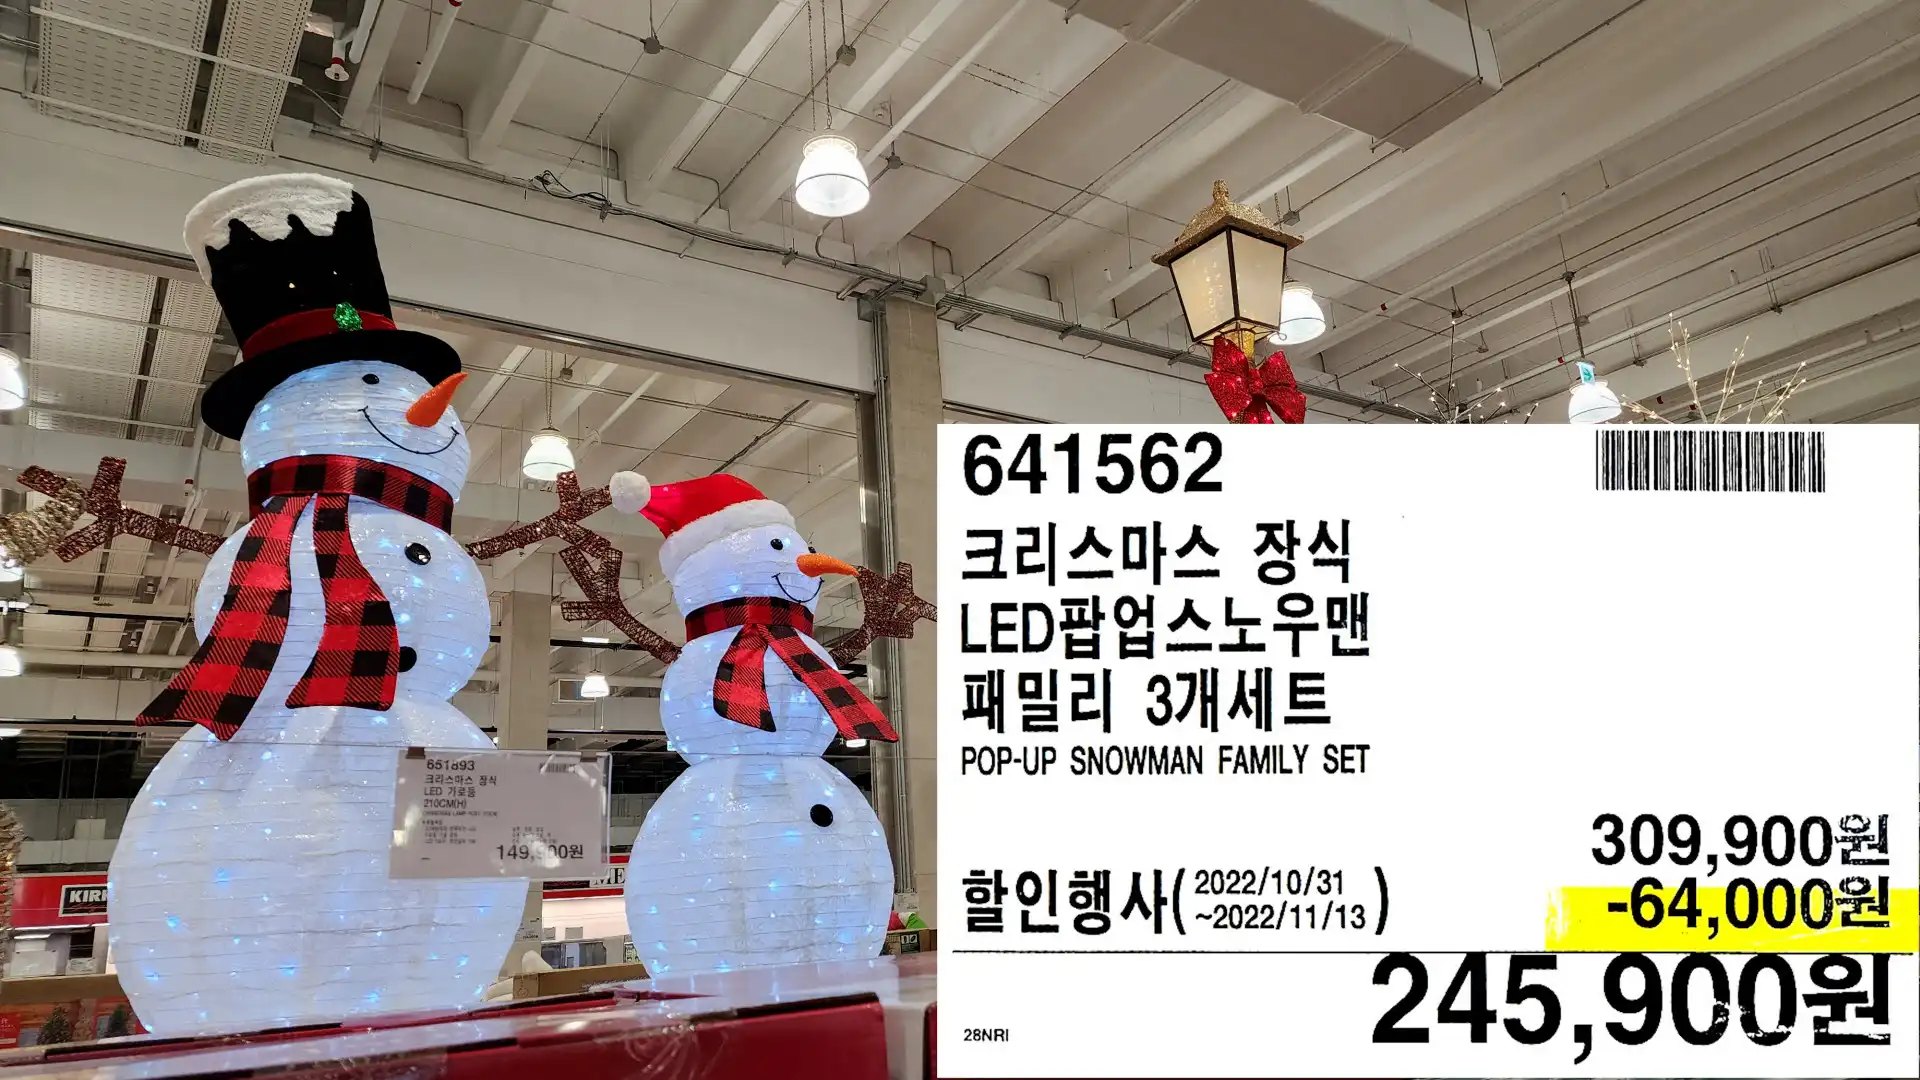 크리스마스 장식
LED팝업스노우맨
패밀리 3개세트
POP-UP SNOWMAN FAMILY SET
245,900원